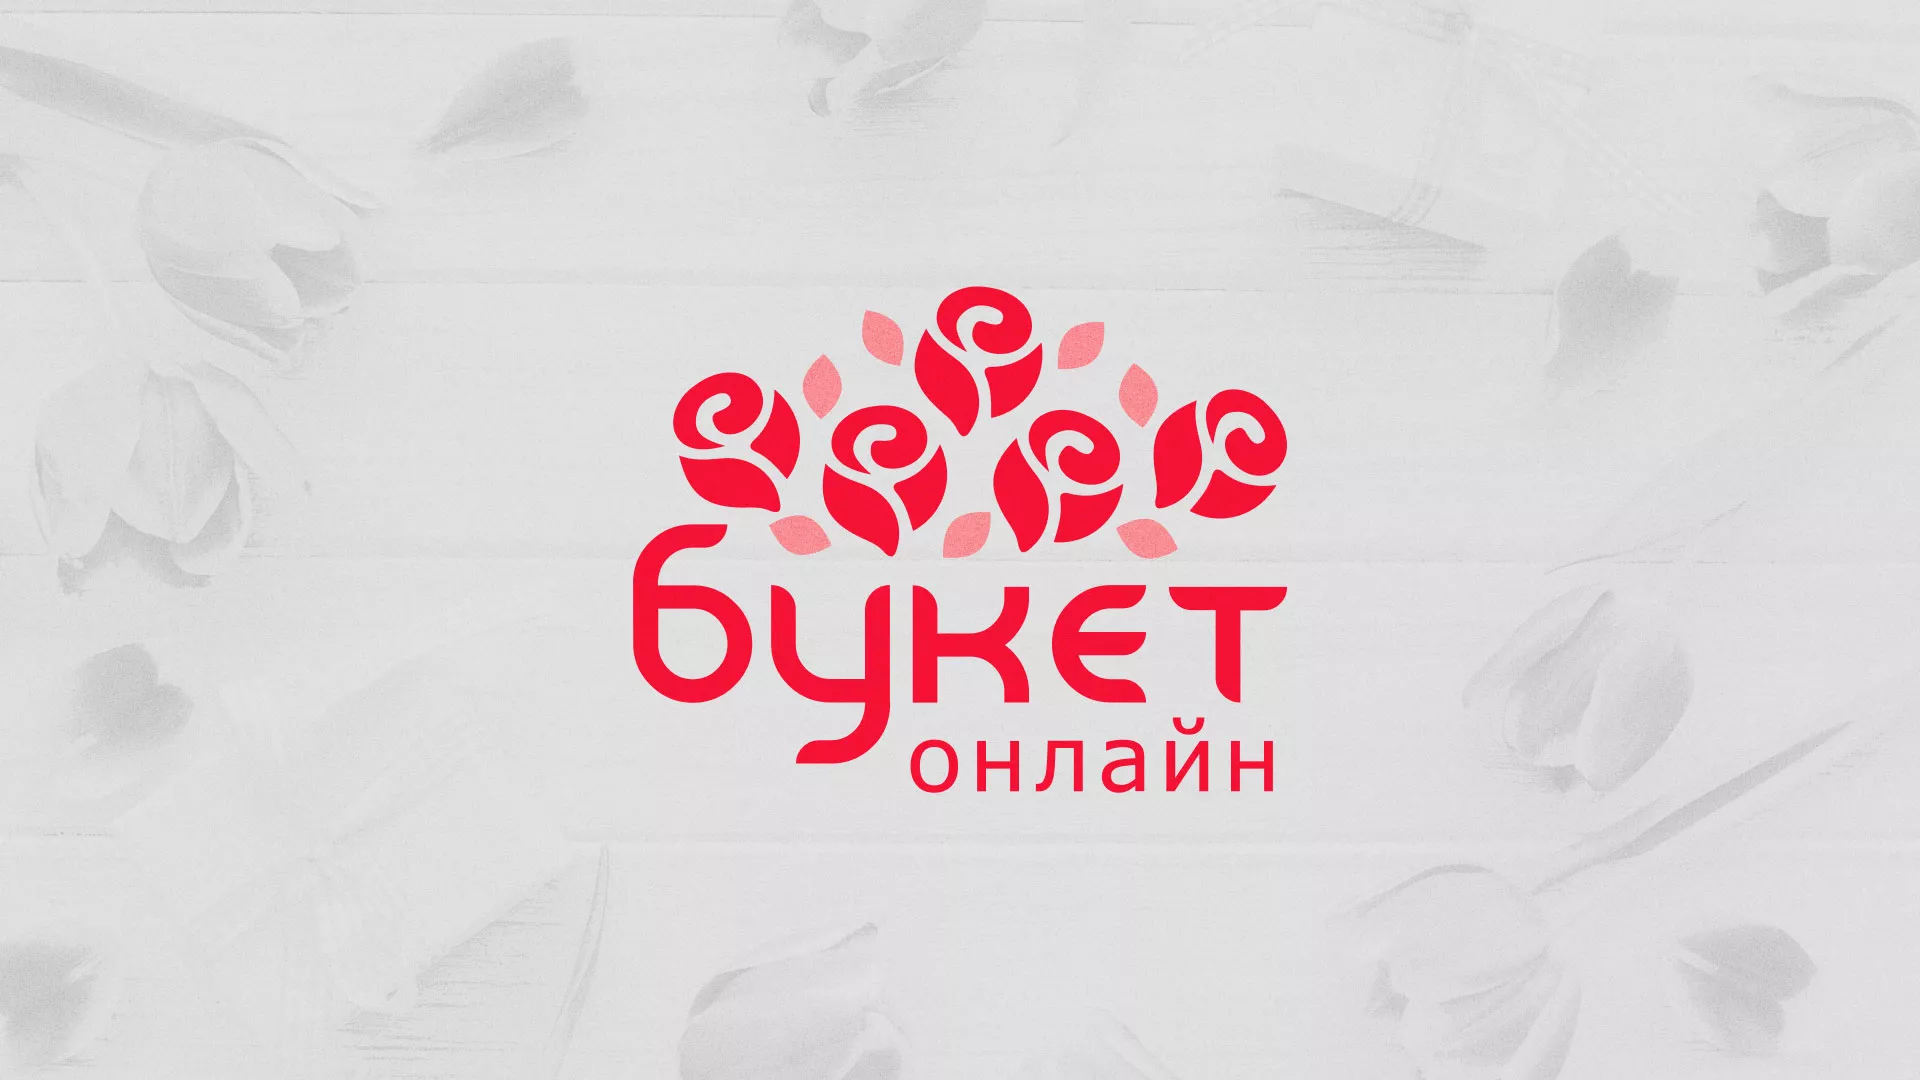 Создание интернет-магазина «Букет-онлайн» по цветам в Райчихинске